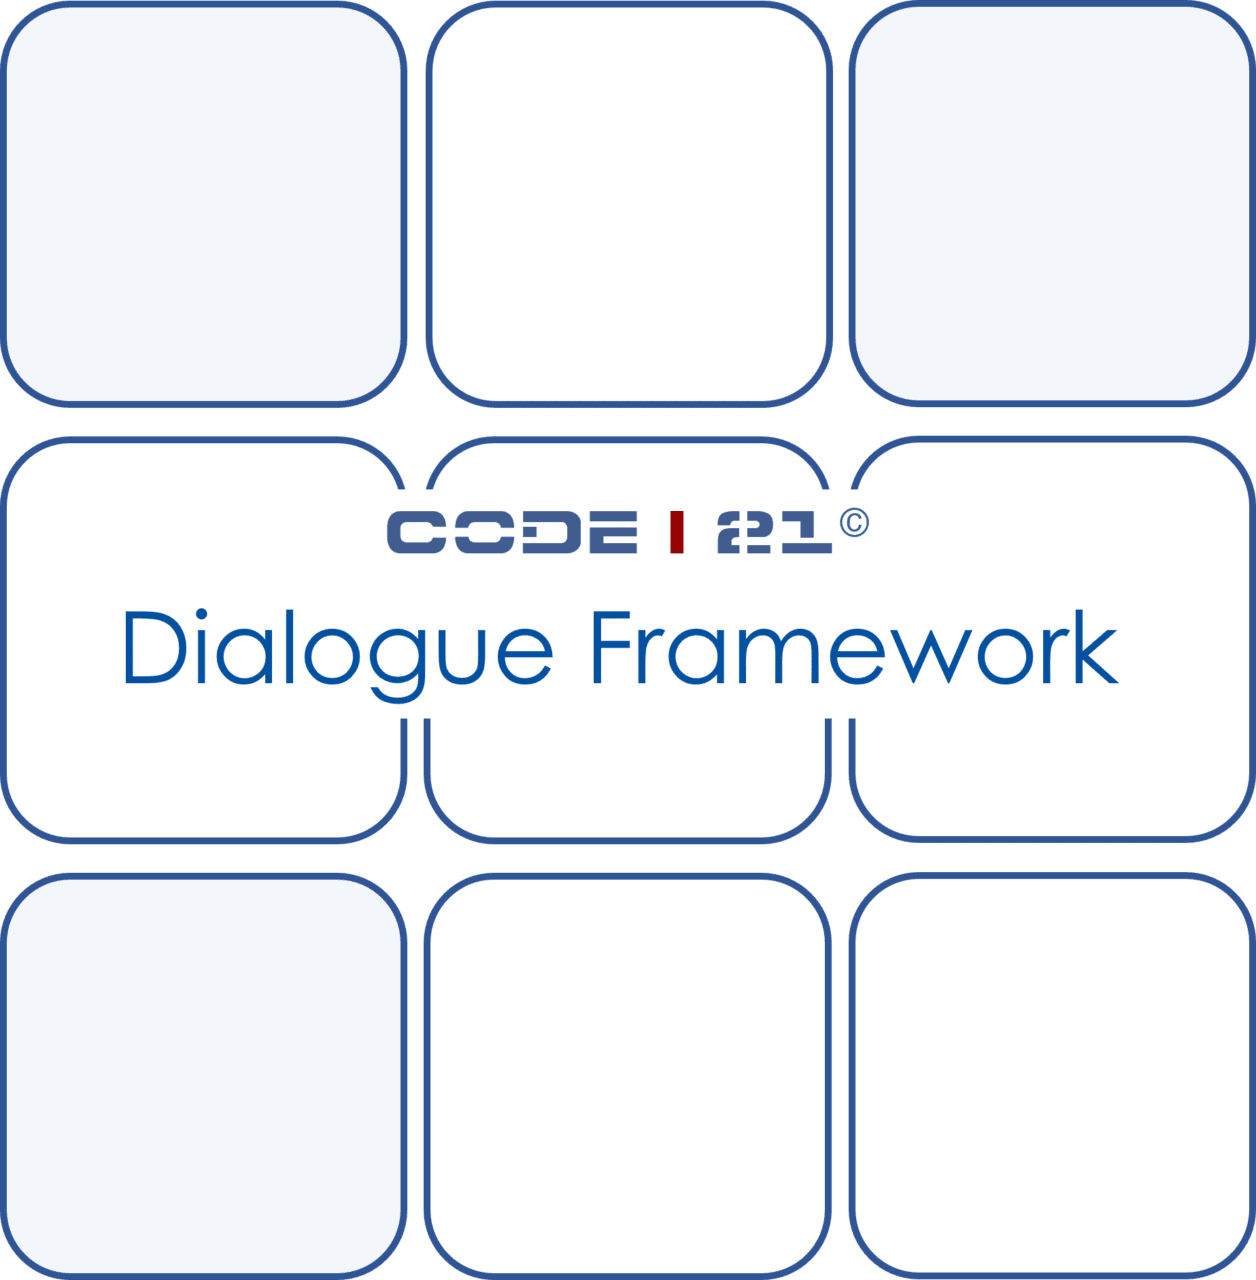 Dialogue Framework